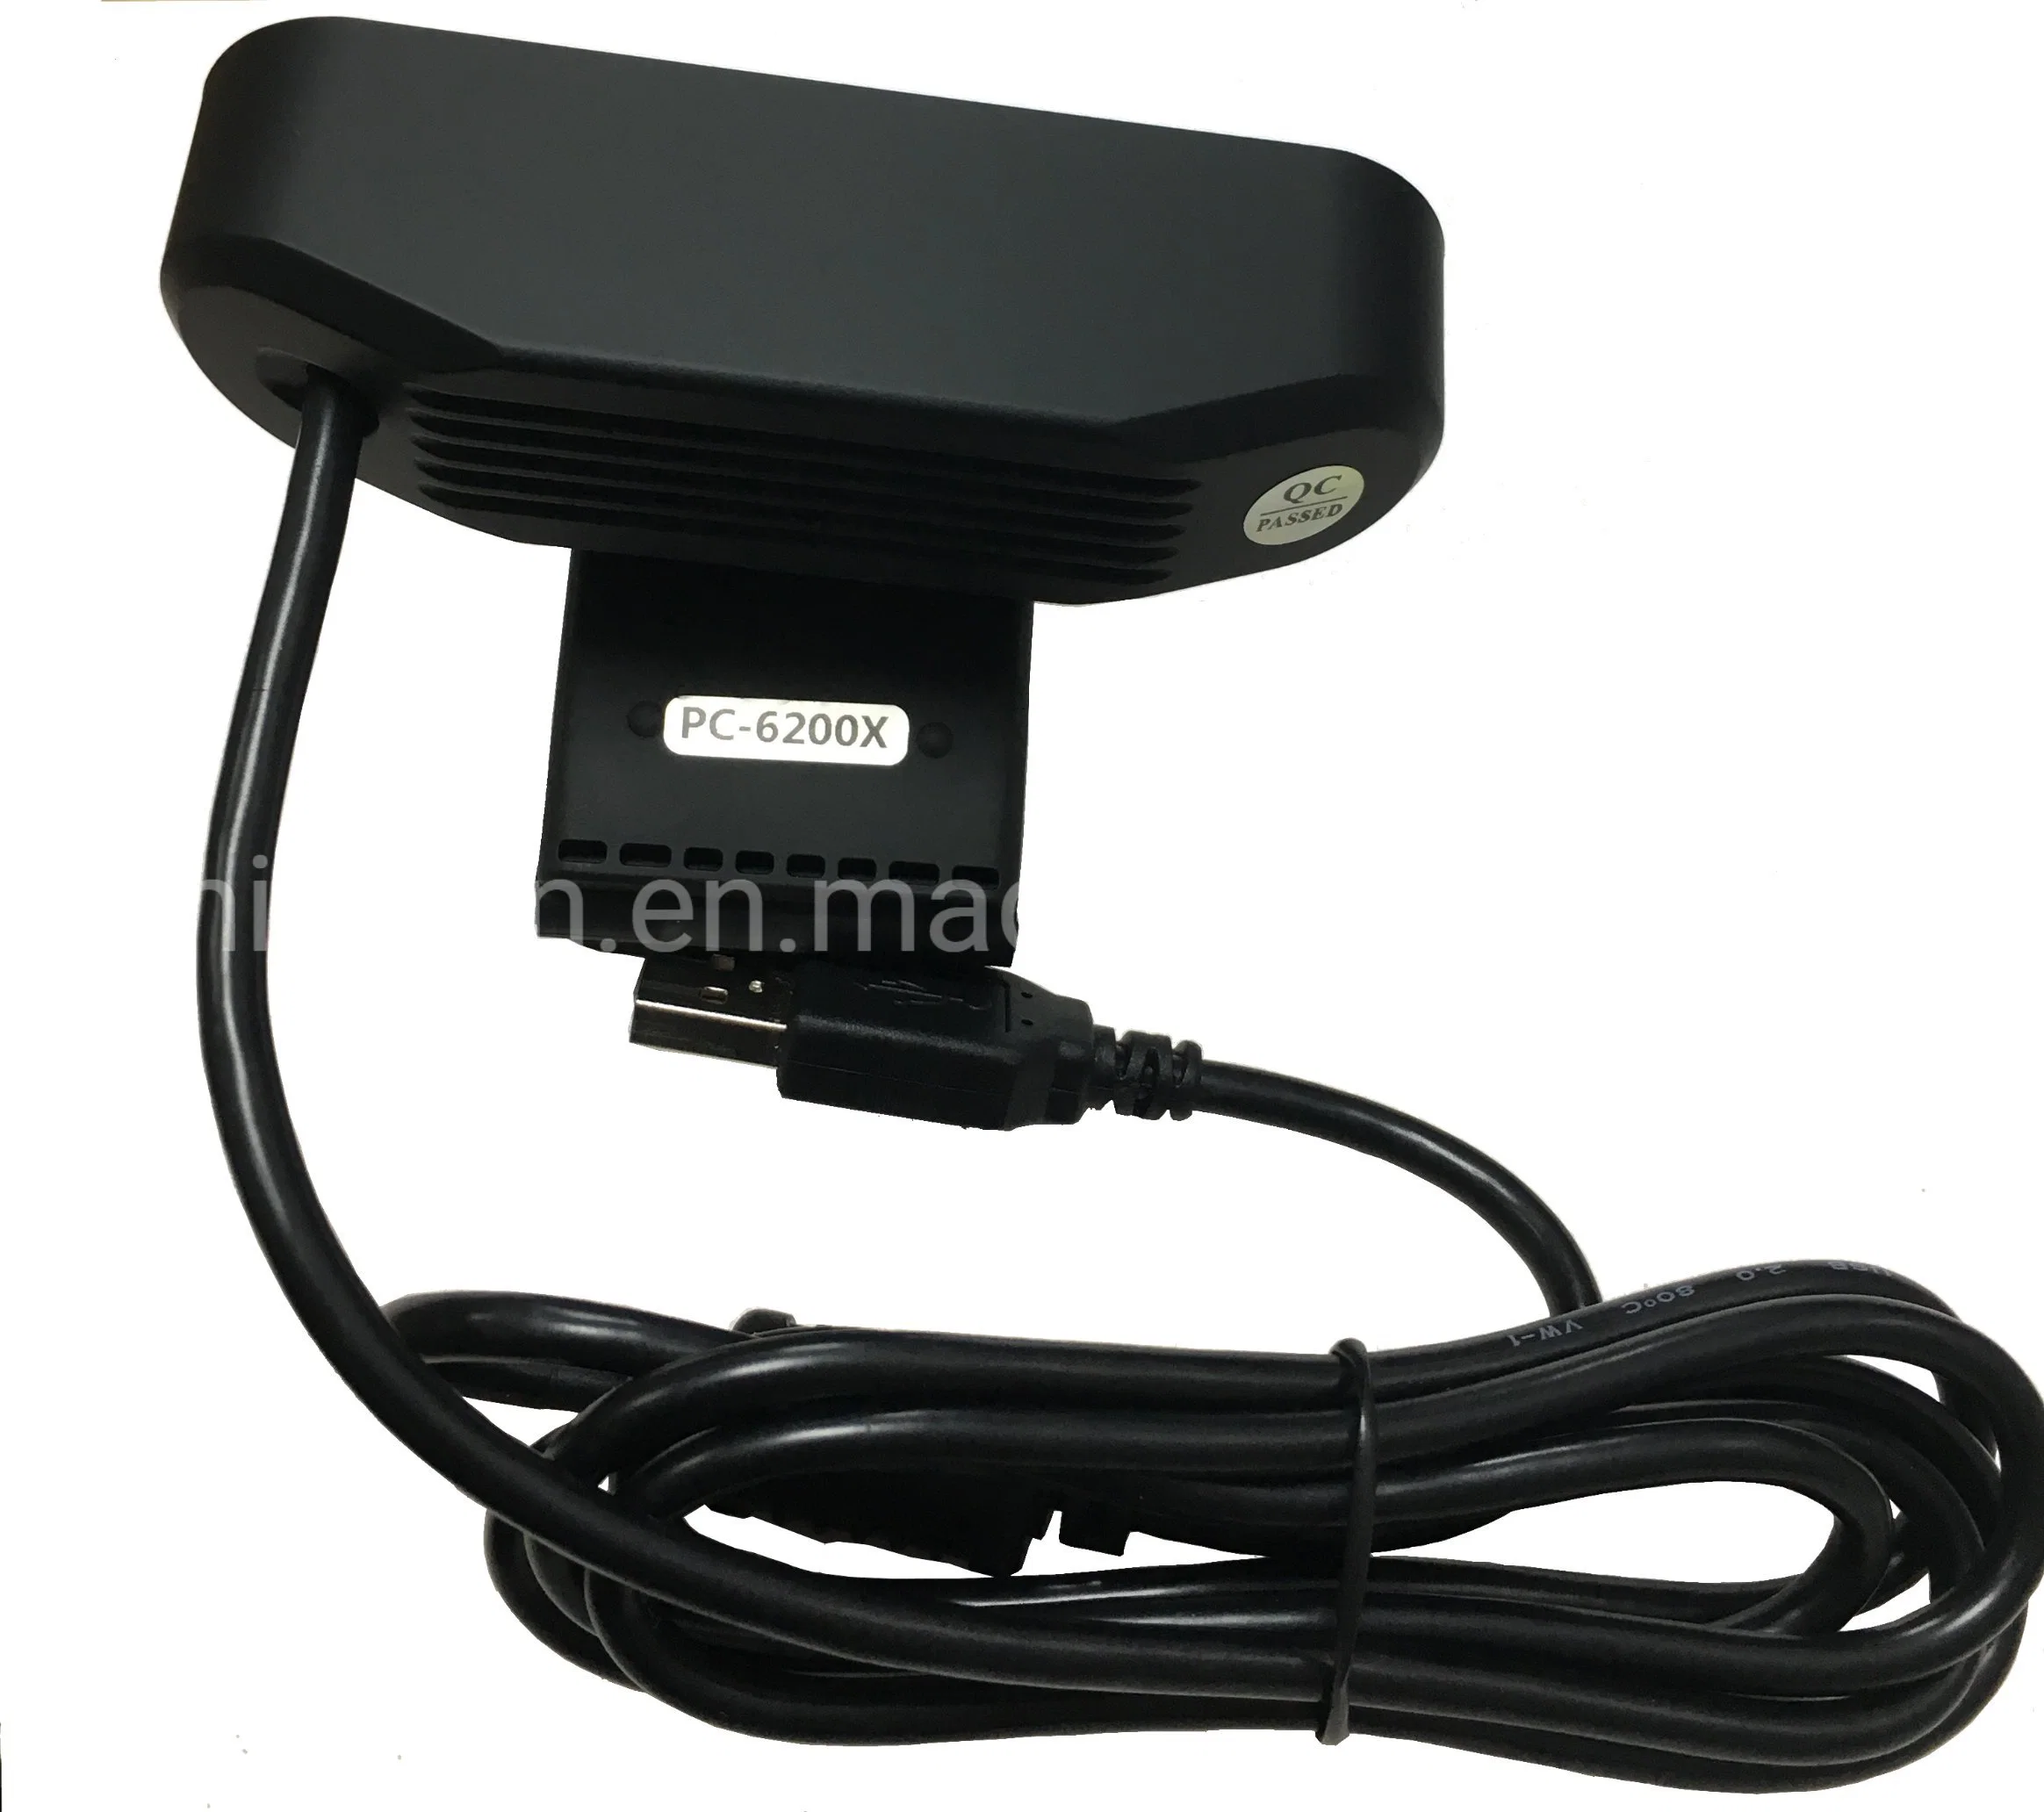 FHD 1080P Webcam avec microphone pour ordinateur portable caméra Web,USB Plug and Play,compatible Skype youtube Windows/Mac OS,pour le streaming en direct,l'enregistrement,Gaming